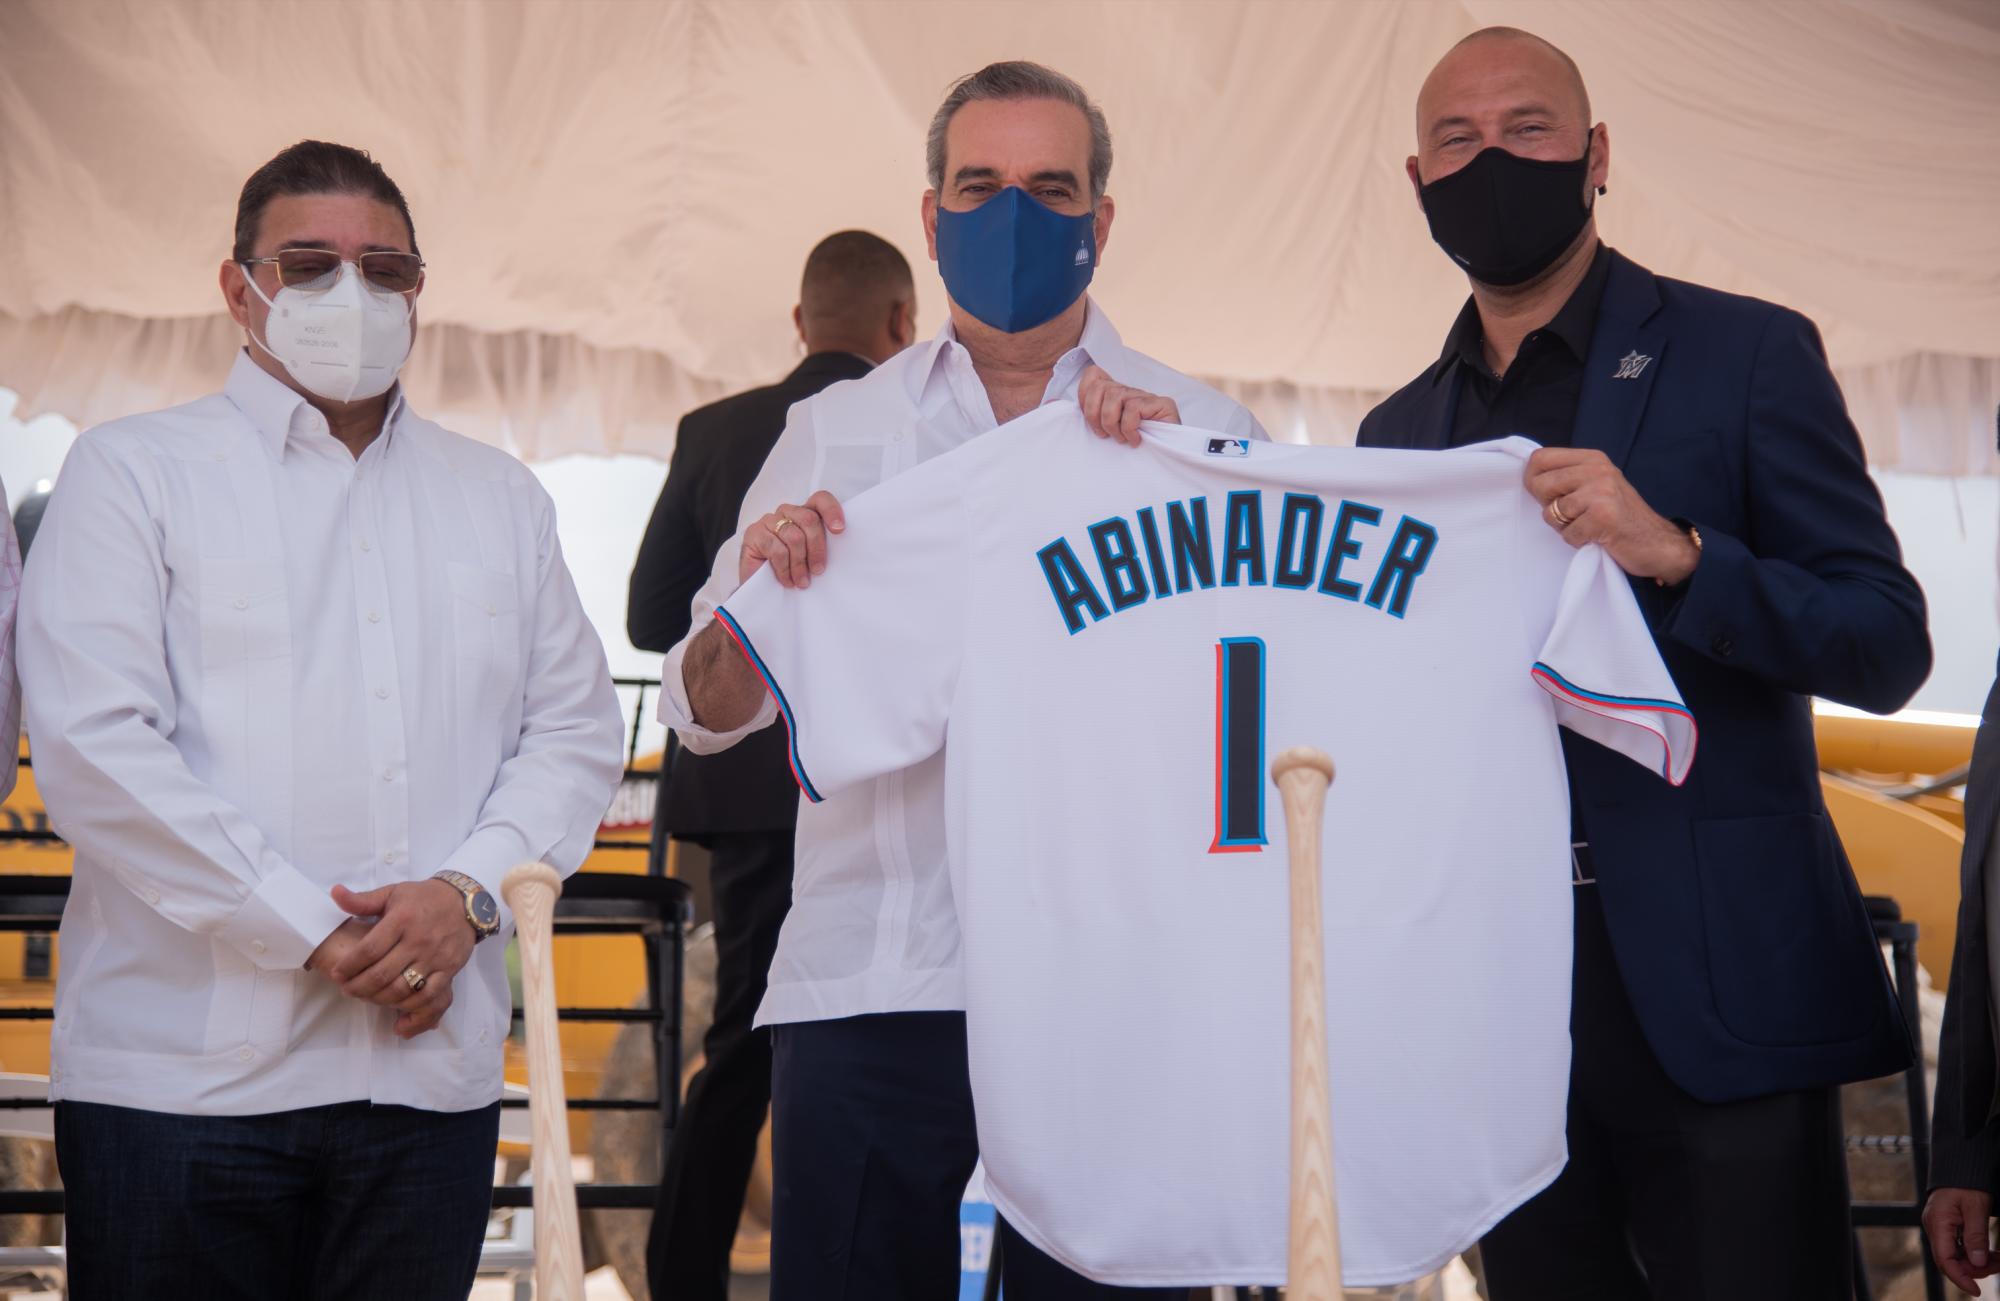 El presidente Luis Abinader recibió una chaqueta con el dorsal número 1 de manos del exgrandeliga Derek Jeter (Foto: Eddy Vittini)